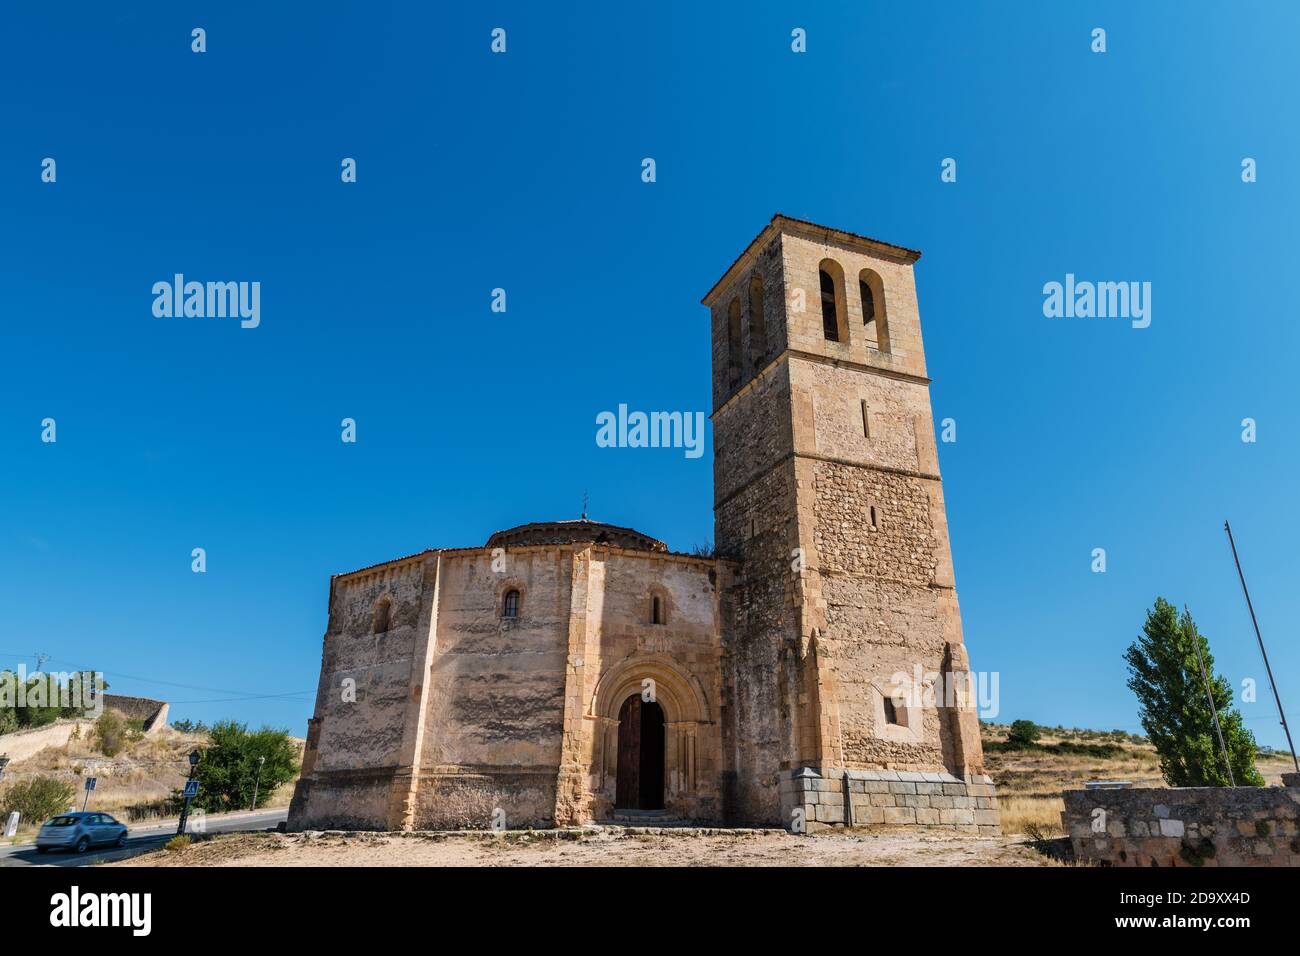 Seitenansicht einer kleinen mittelalterlichen Kirche in Segovia (Kirche des wahren Kreuzes), einem katholischen Tempel, der im XII Jahrhundert außerhalb der Stadtmauern errichtet wurde. Stockfoto